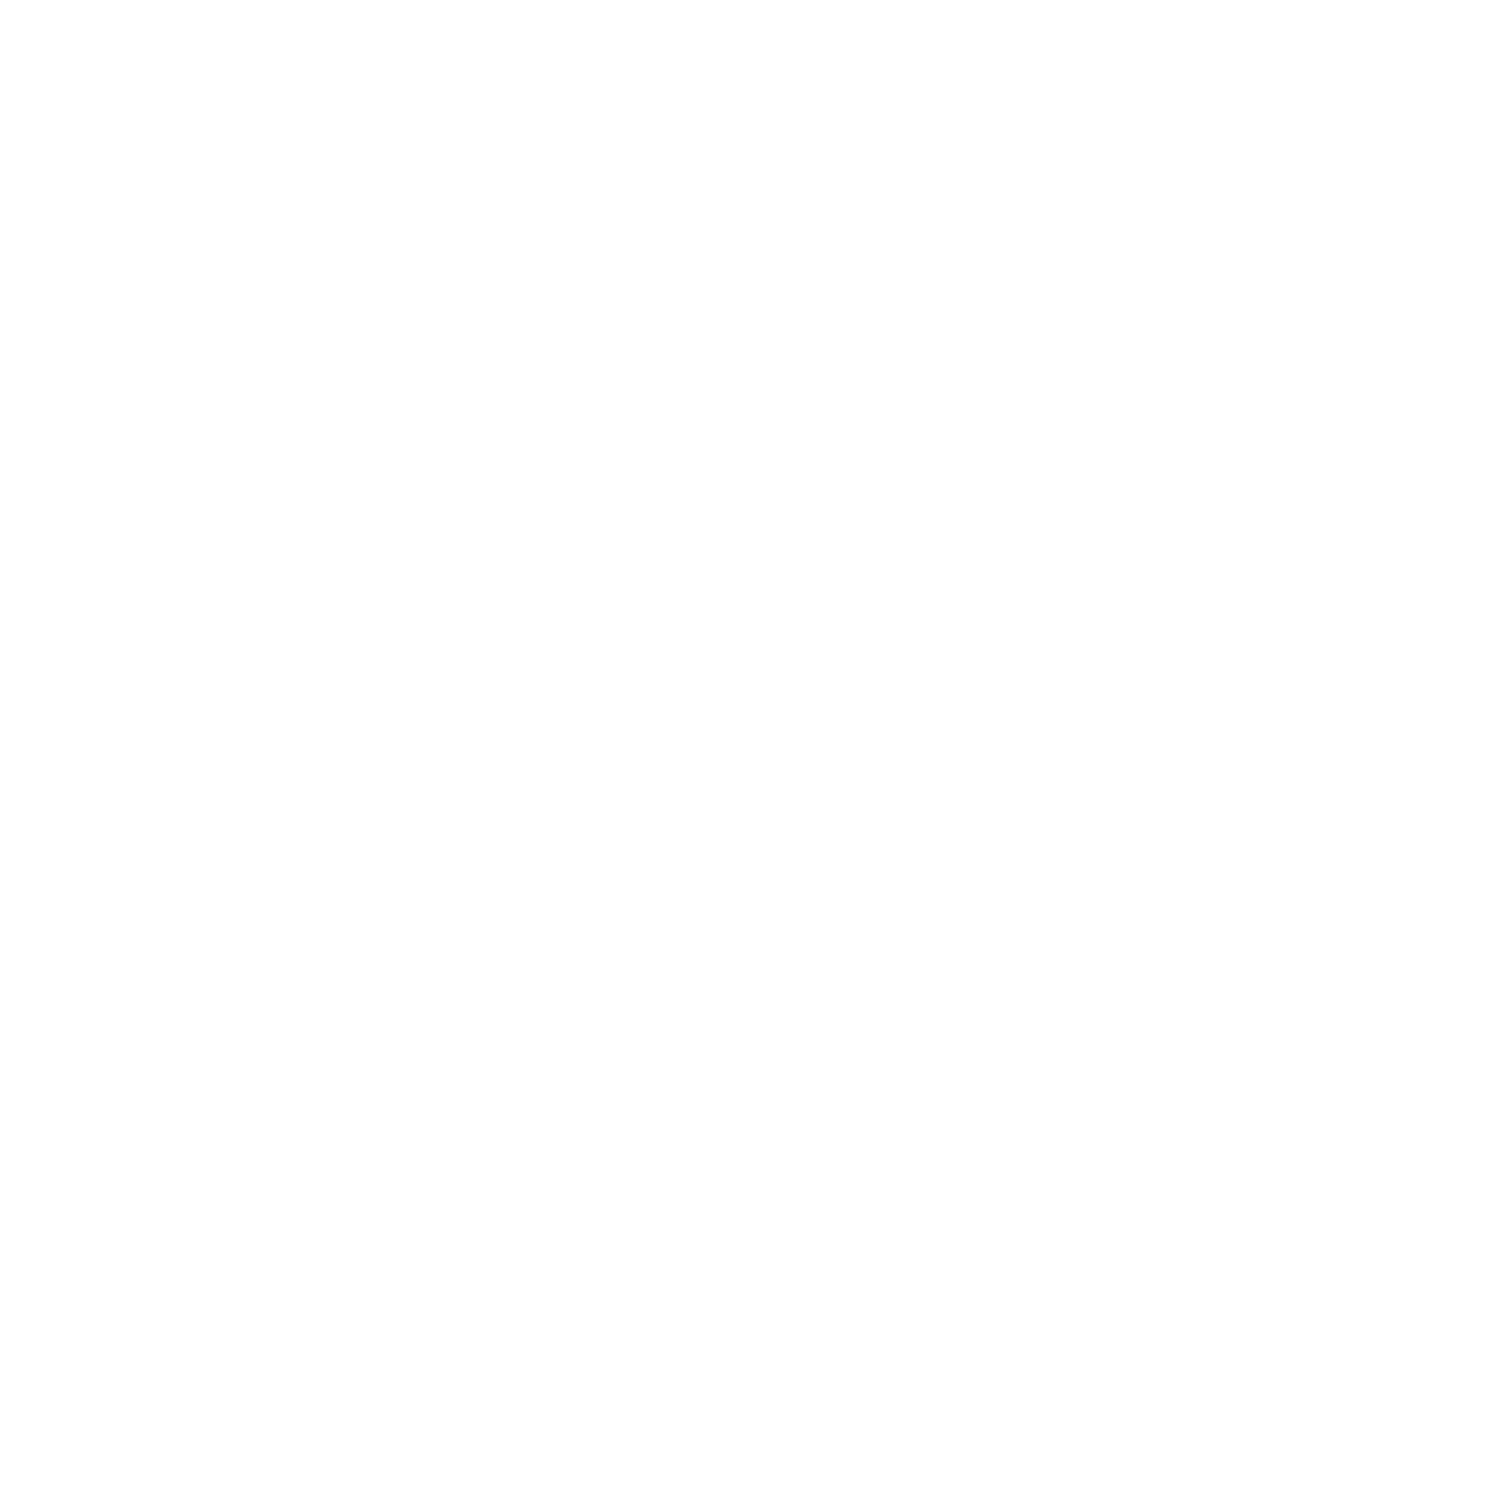 GACIS.org